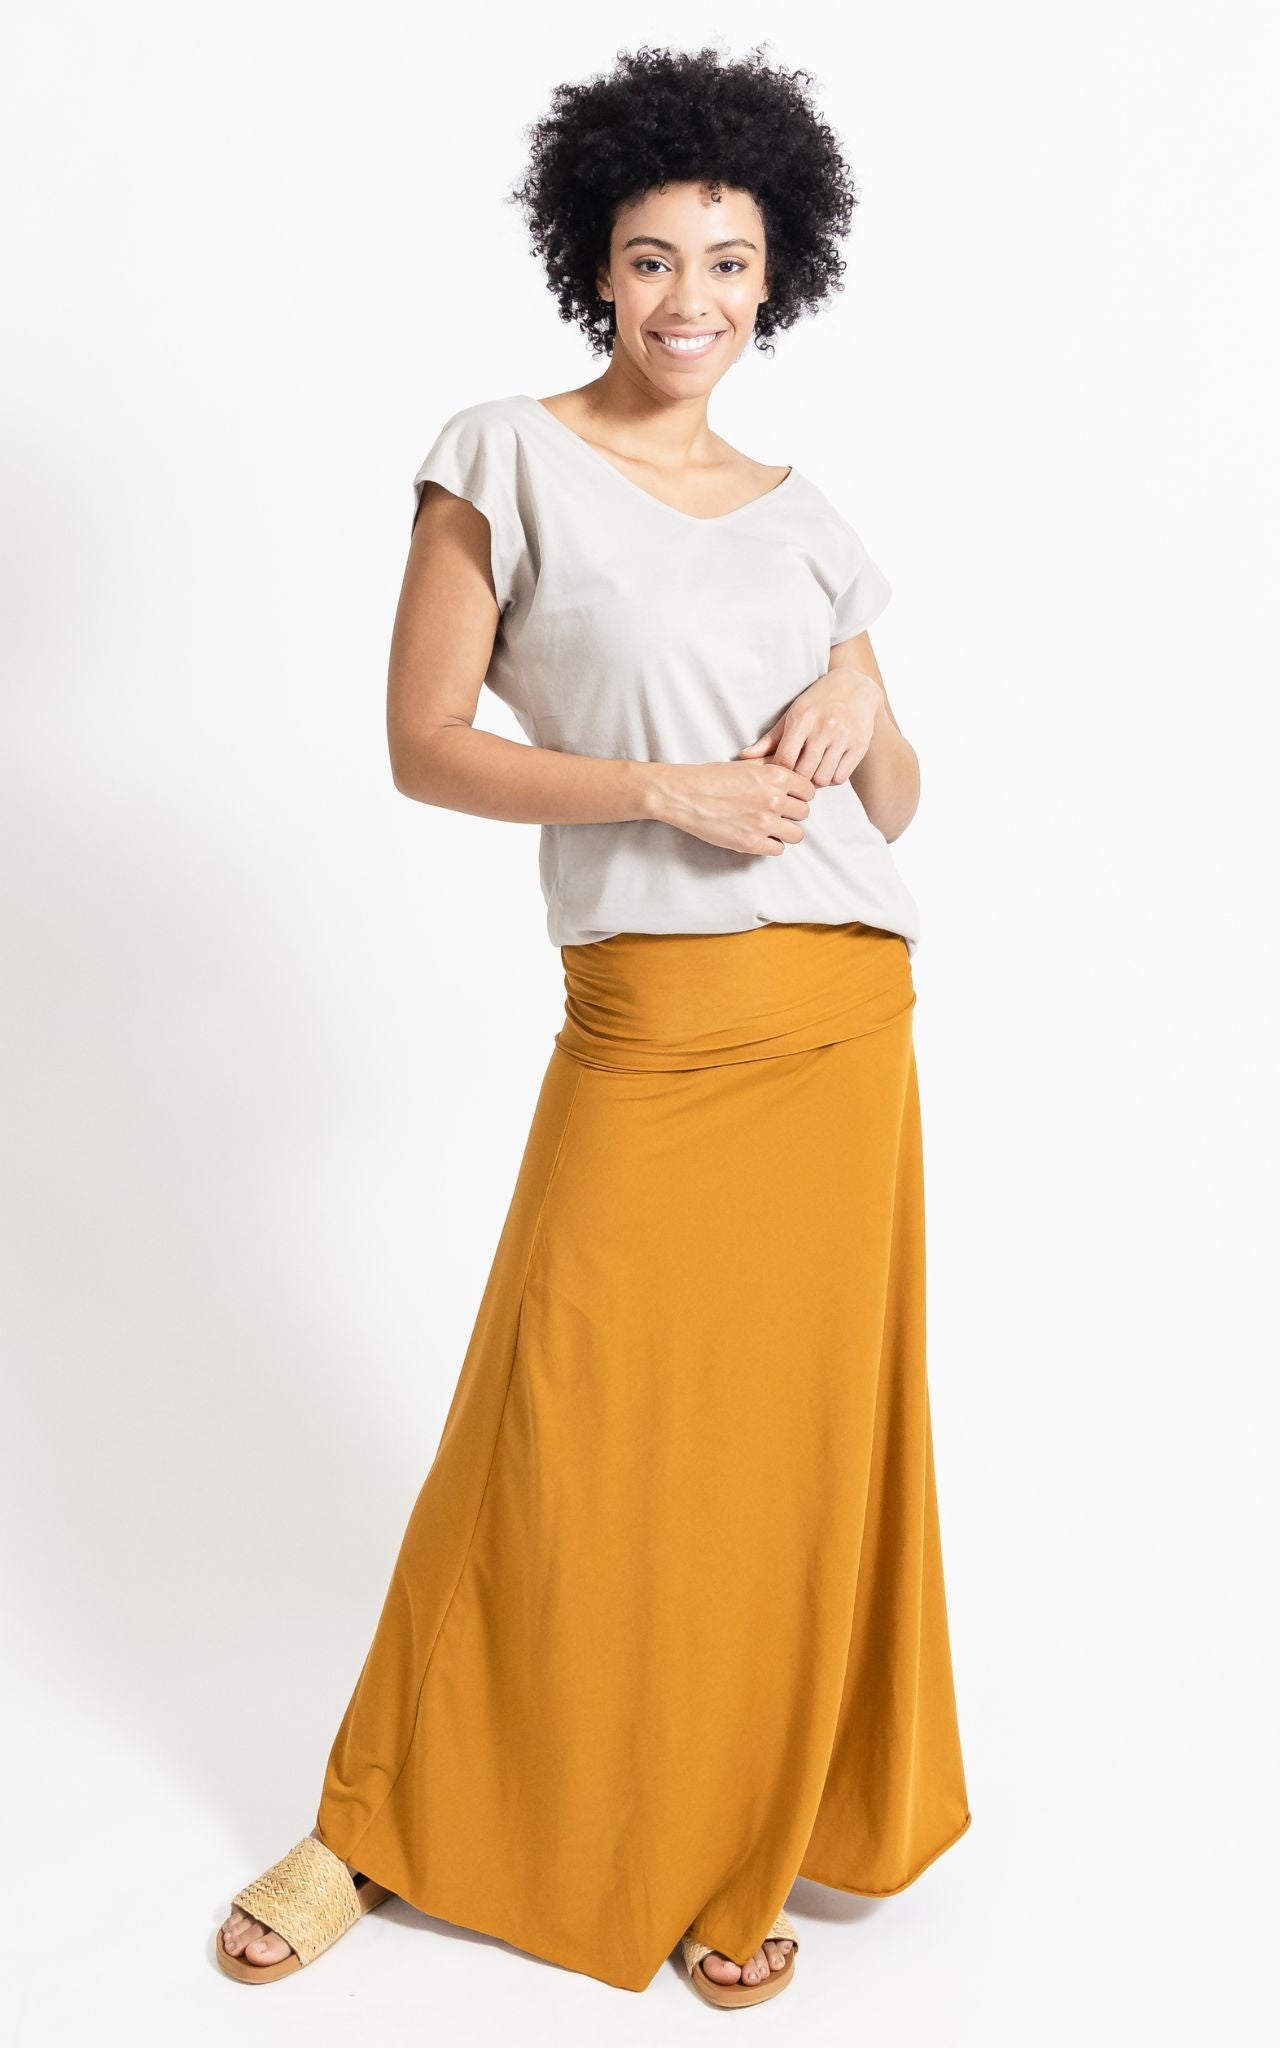 Surya Australia Ethical Organic Cotton Skirt made in Nepal - Tumeric